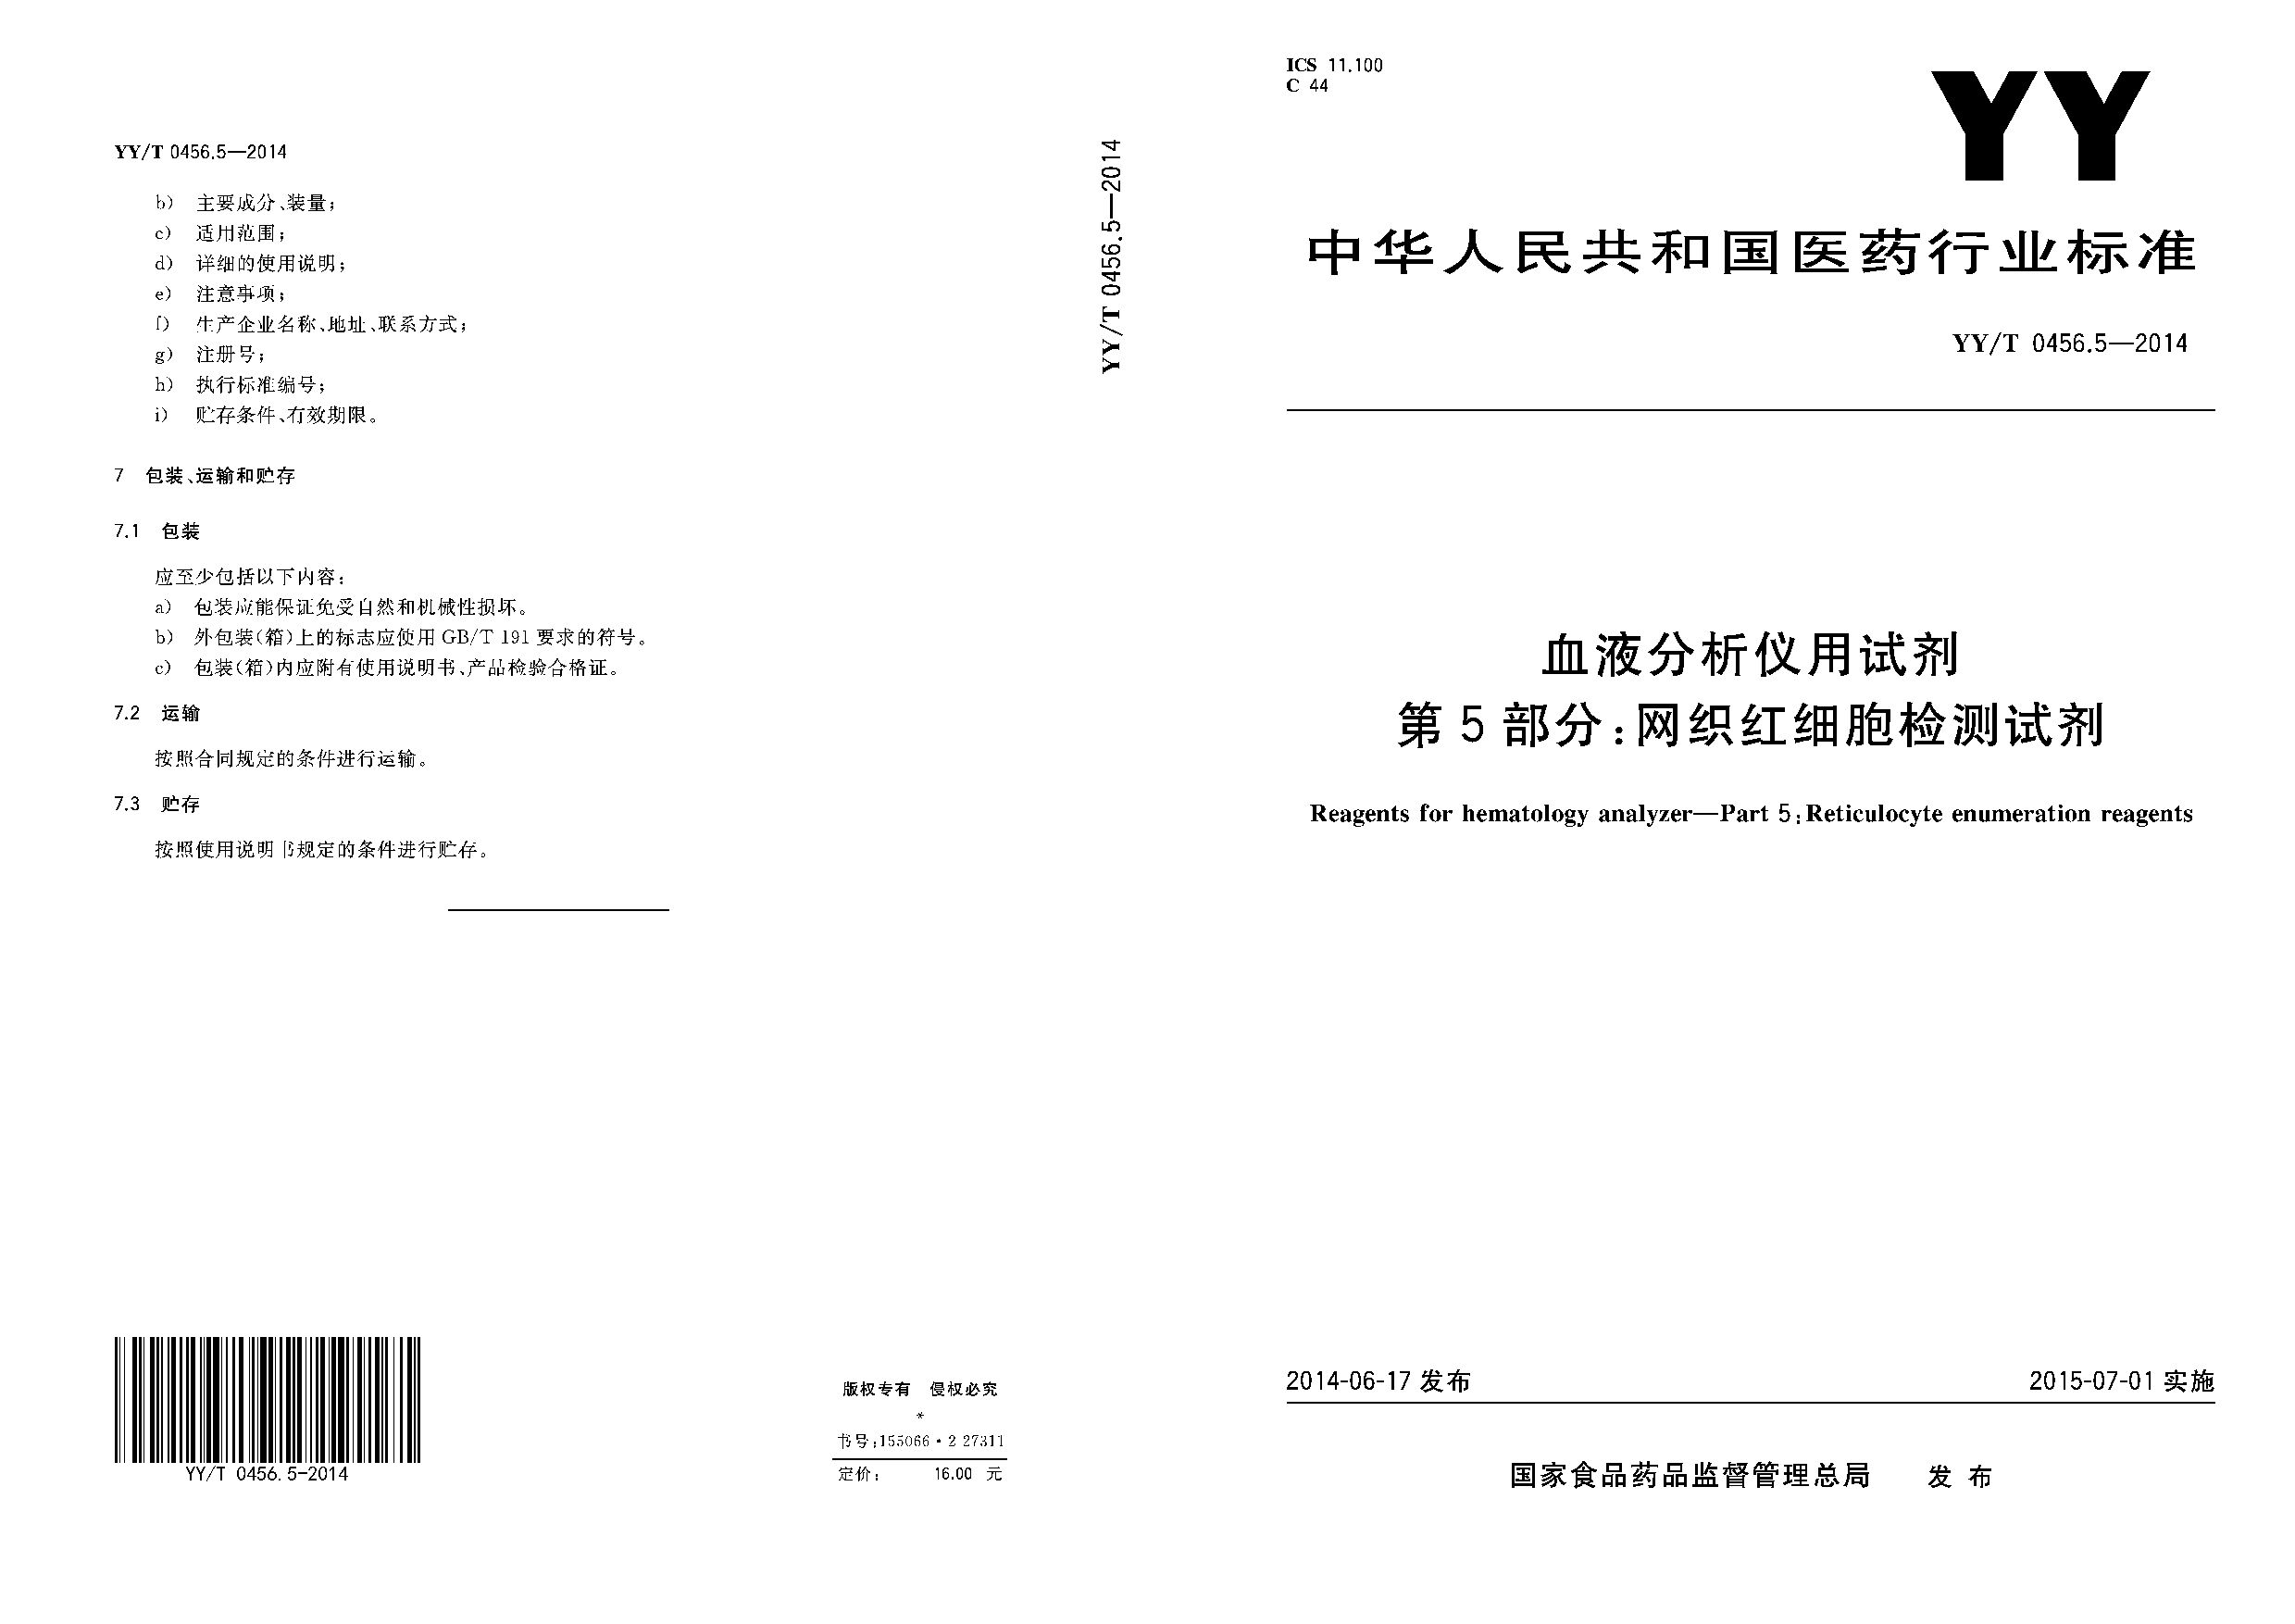 YY/T 0456.5-2014封面图